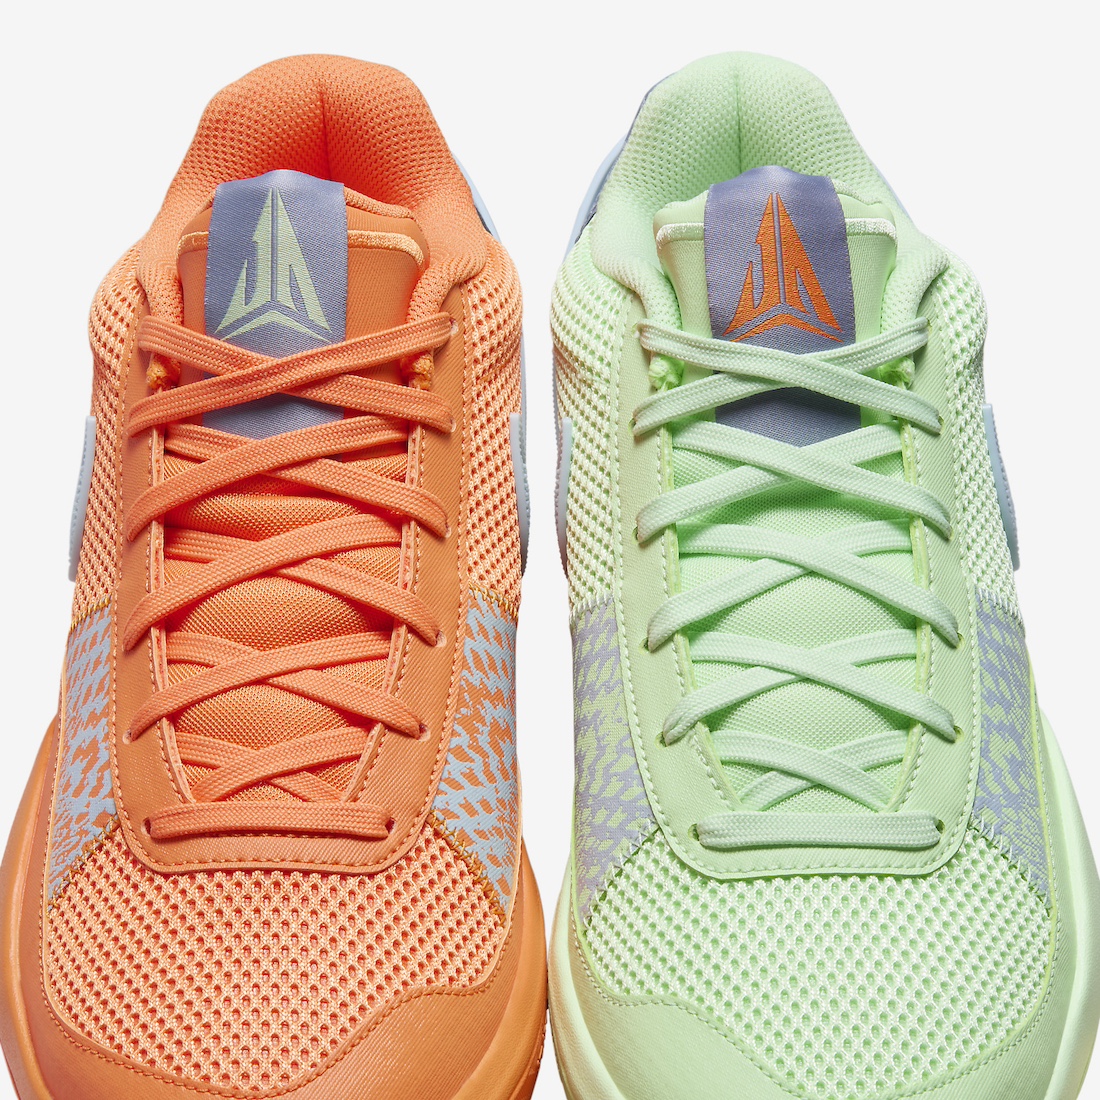 Nike Ja 1 Bright Mandarin Vapor Green FQ4796 800 Release Date 8